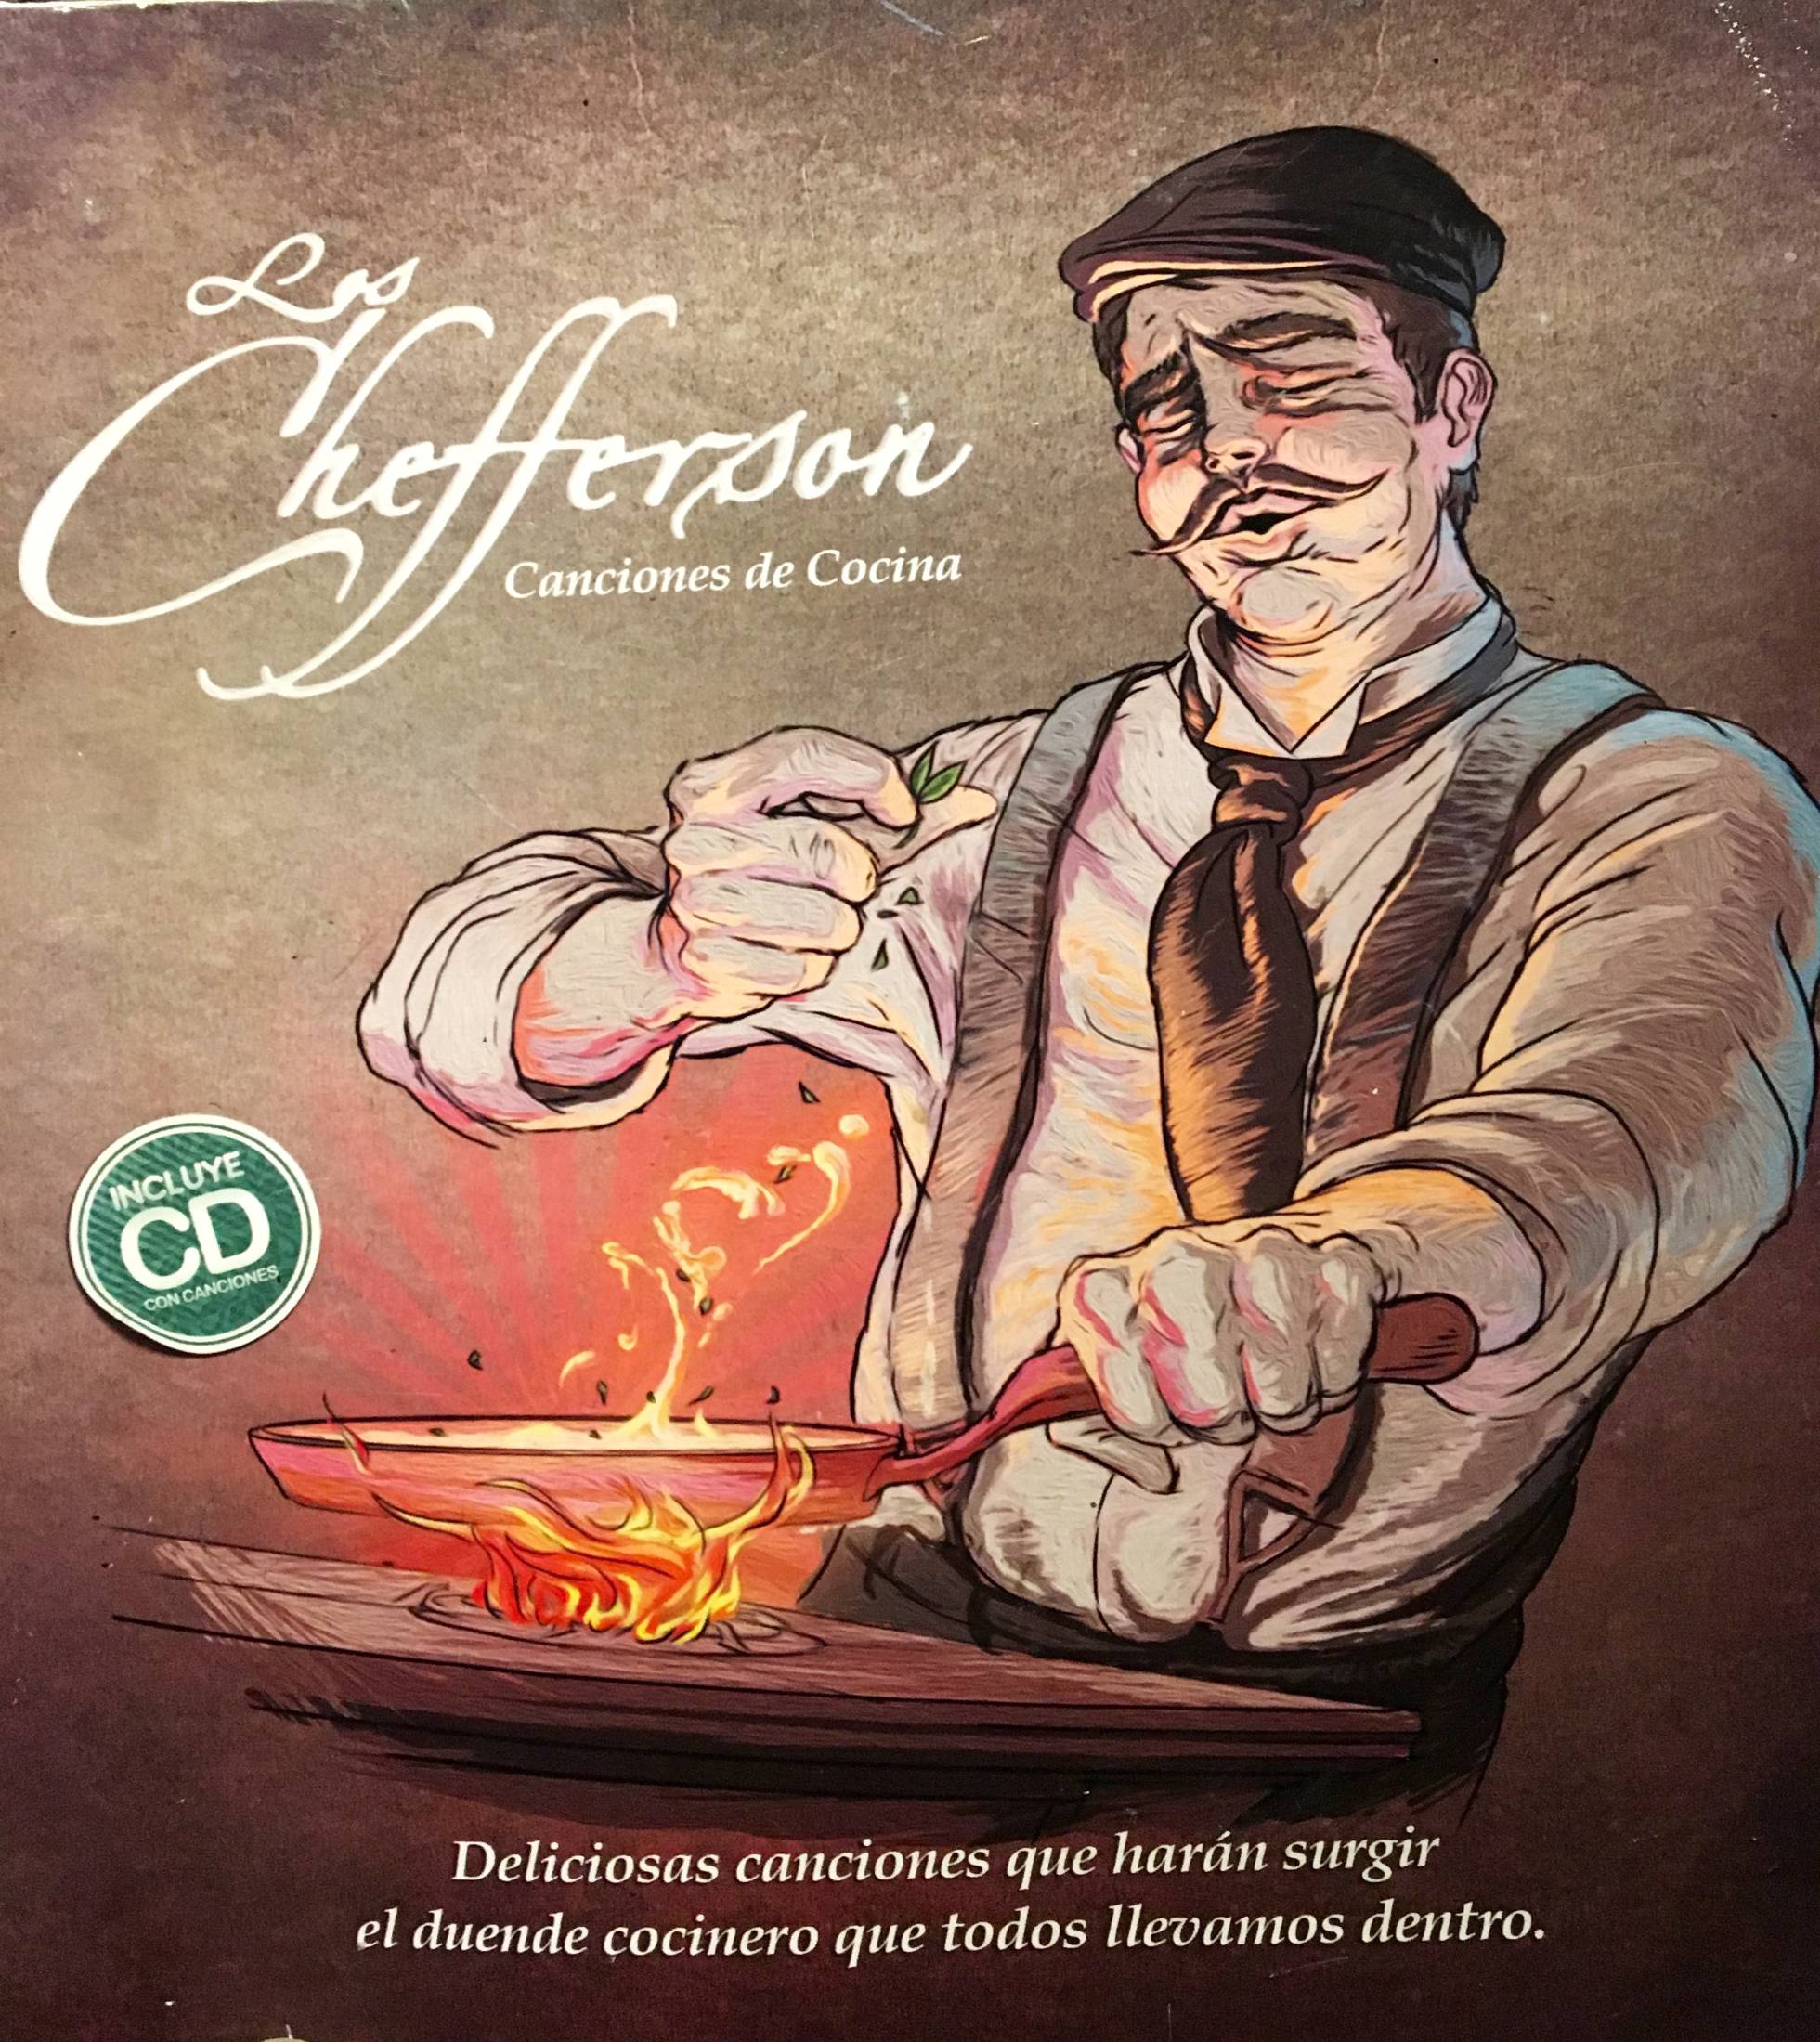 La portada del libro de Los Chefferson. Los maplatenses, elogiados en el diario El País de España.